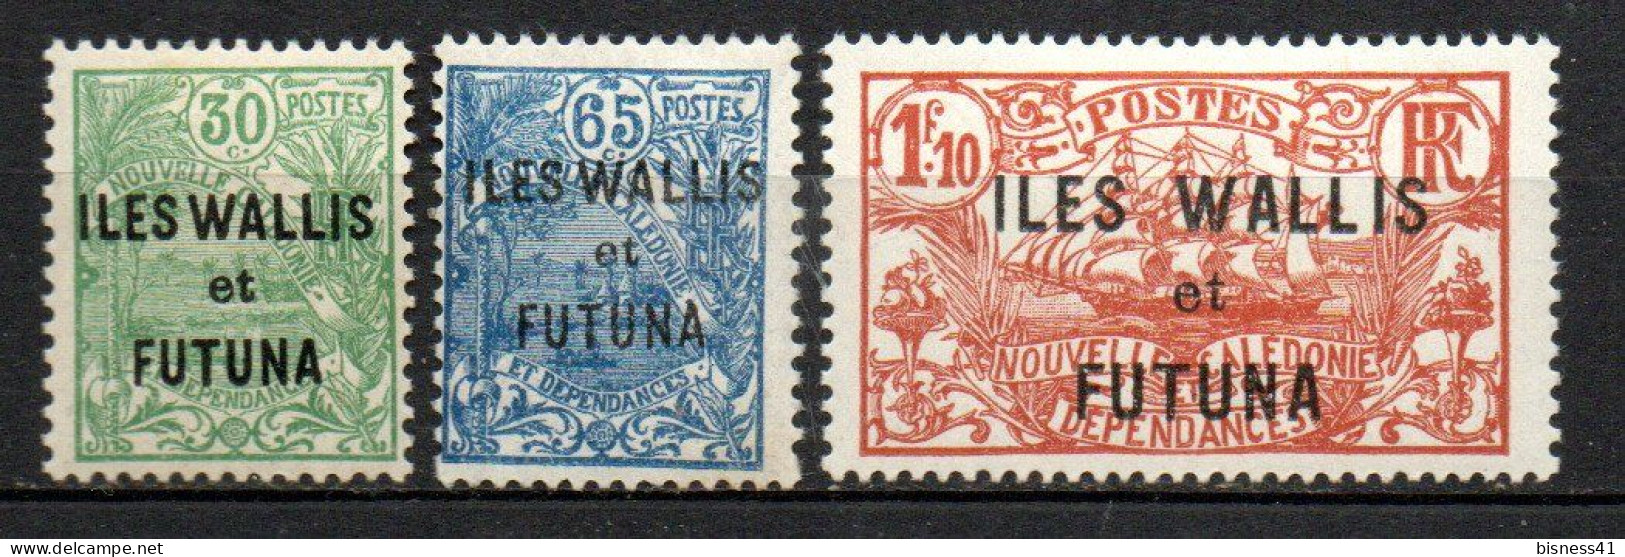 Col33 Colonie Wallis & Futuna N° 40 à 42 Neuf X MH Cote : 17,00€ - Neufs